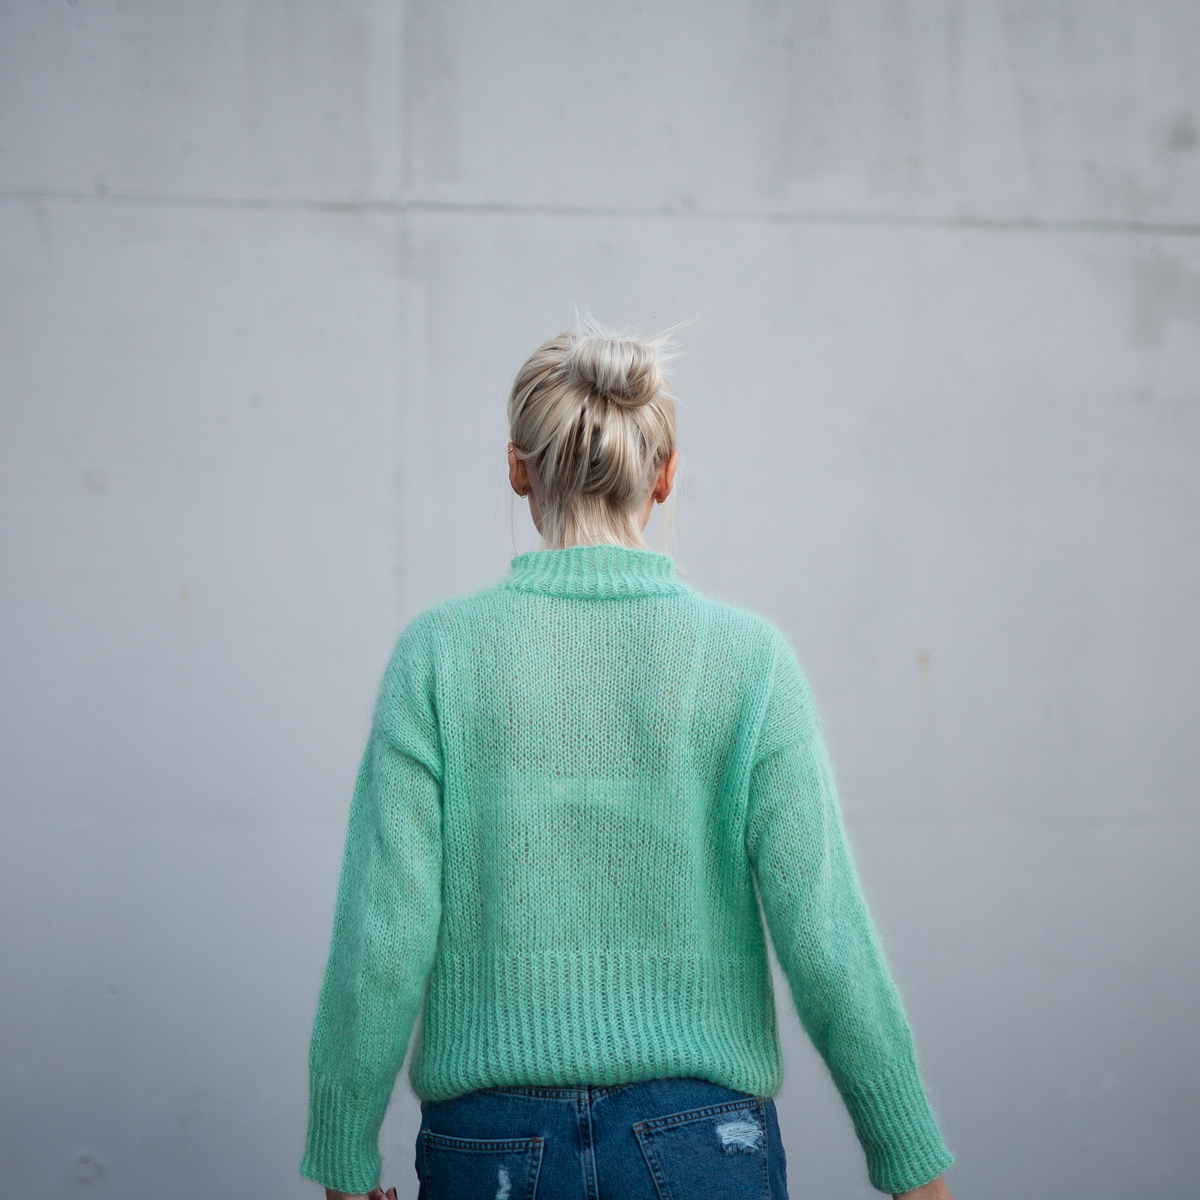 turtleneck sweater women knitting pattern - Elvira Sweater | Turtleneck sweater women knitting kit - by HipKnitShop - 03/09/2018